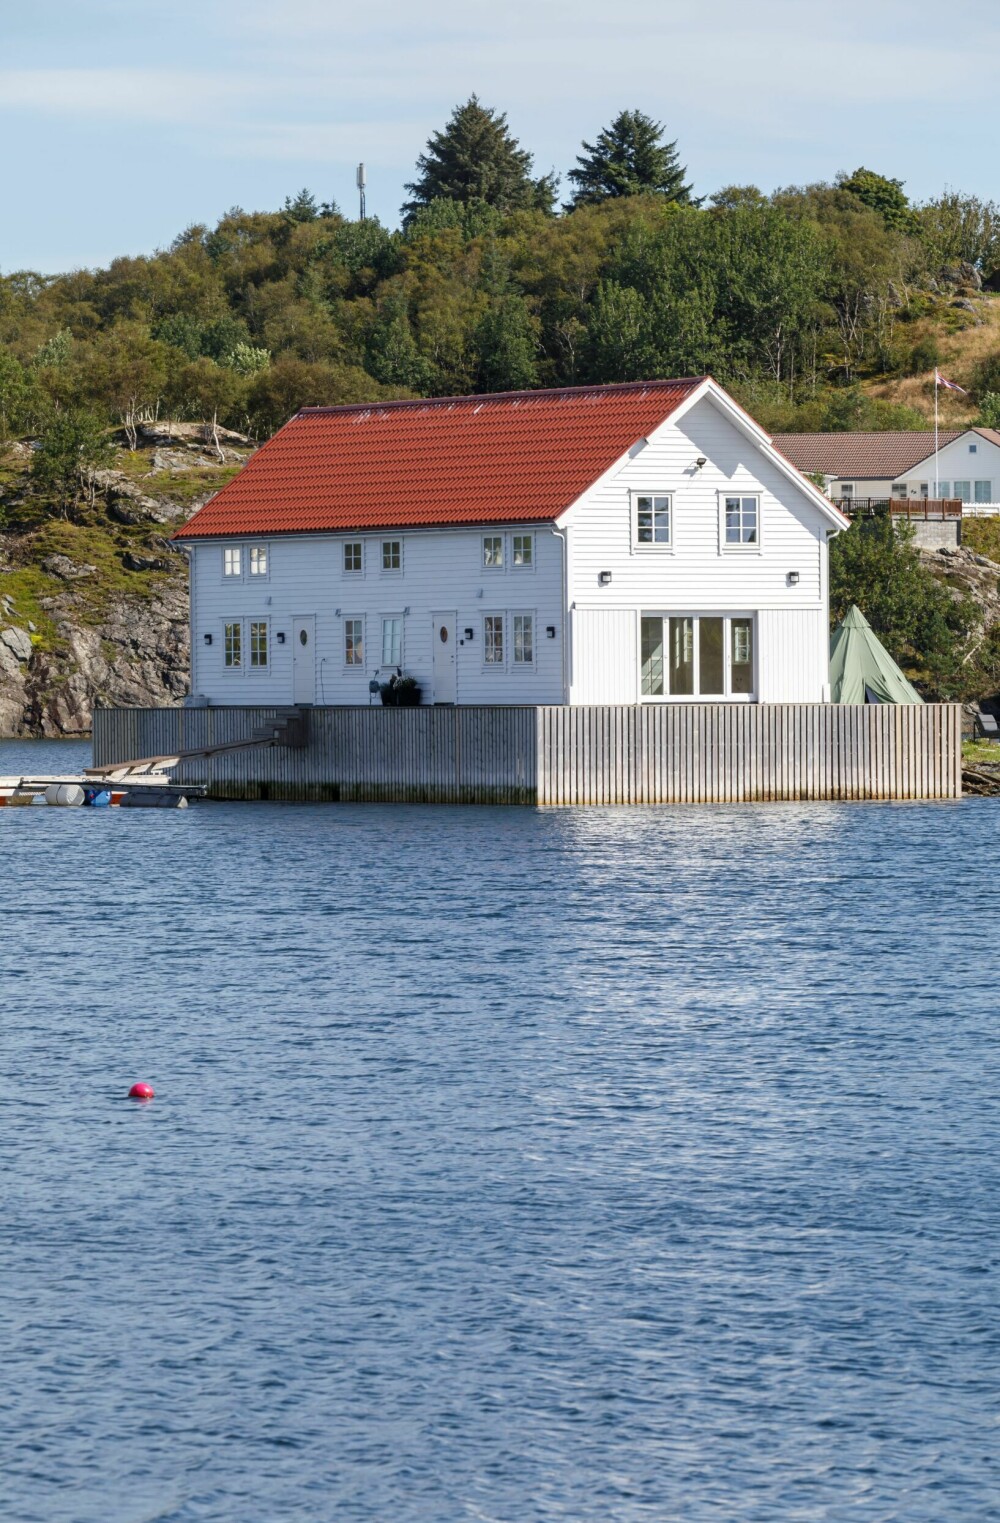 Hengjo, som nå er bygget om til et feriested, var en fiskeribygning som frem til 1980-tallet var et sameie for forskjellige fiskere.